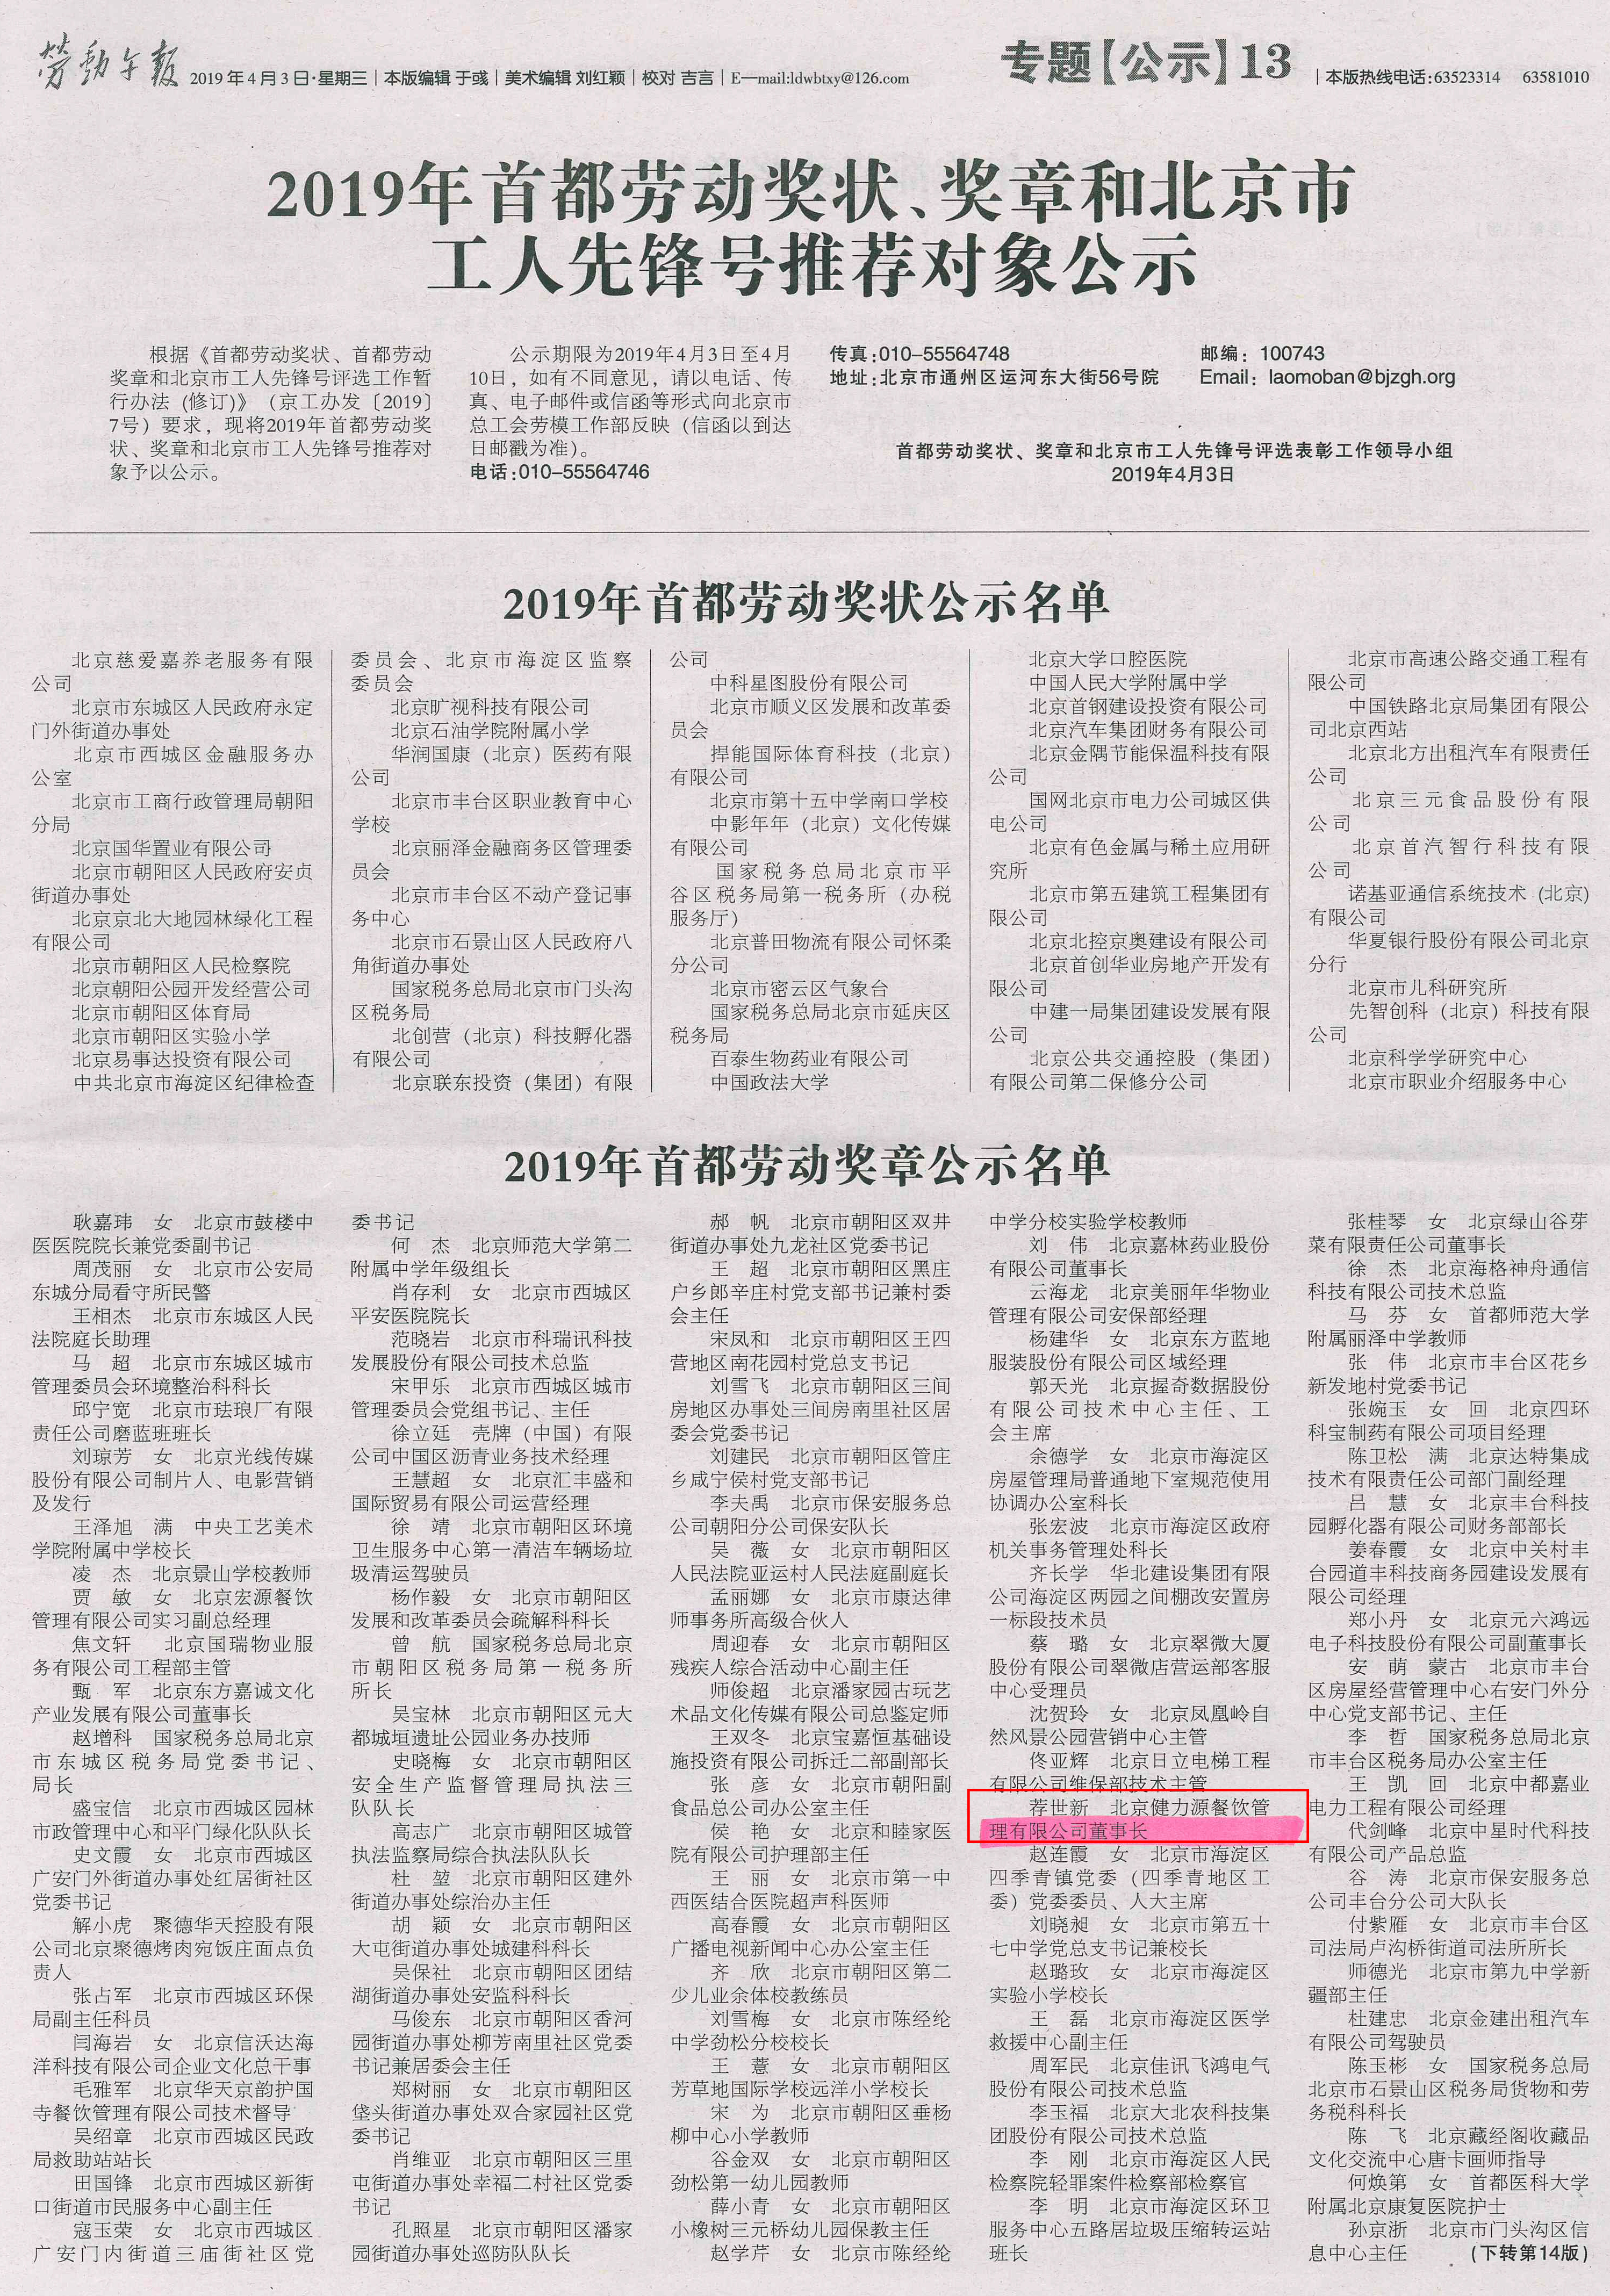 2019年首都勞動獎狀、獎章和北京市工人先鋒號推薦對象公示